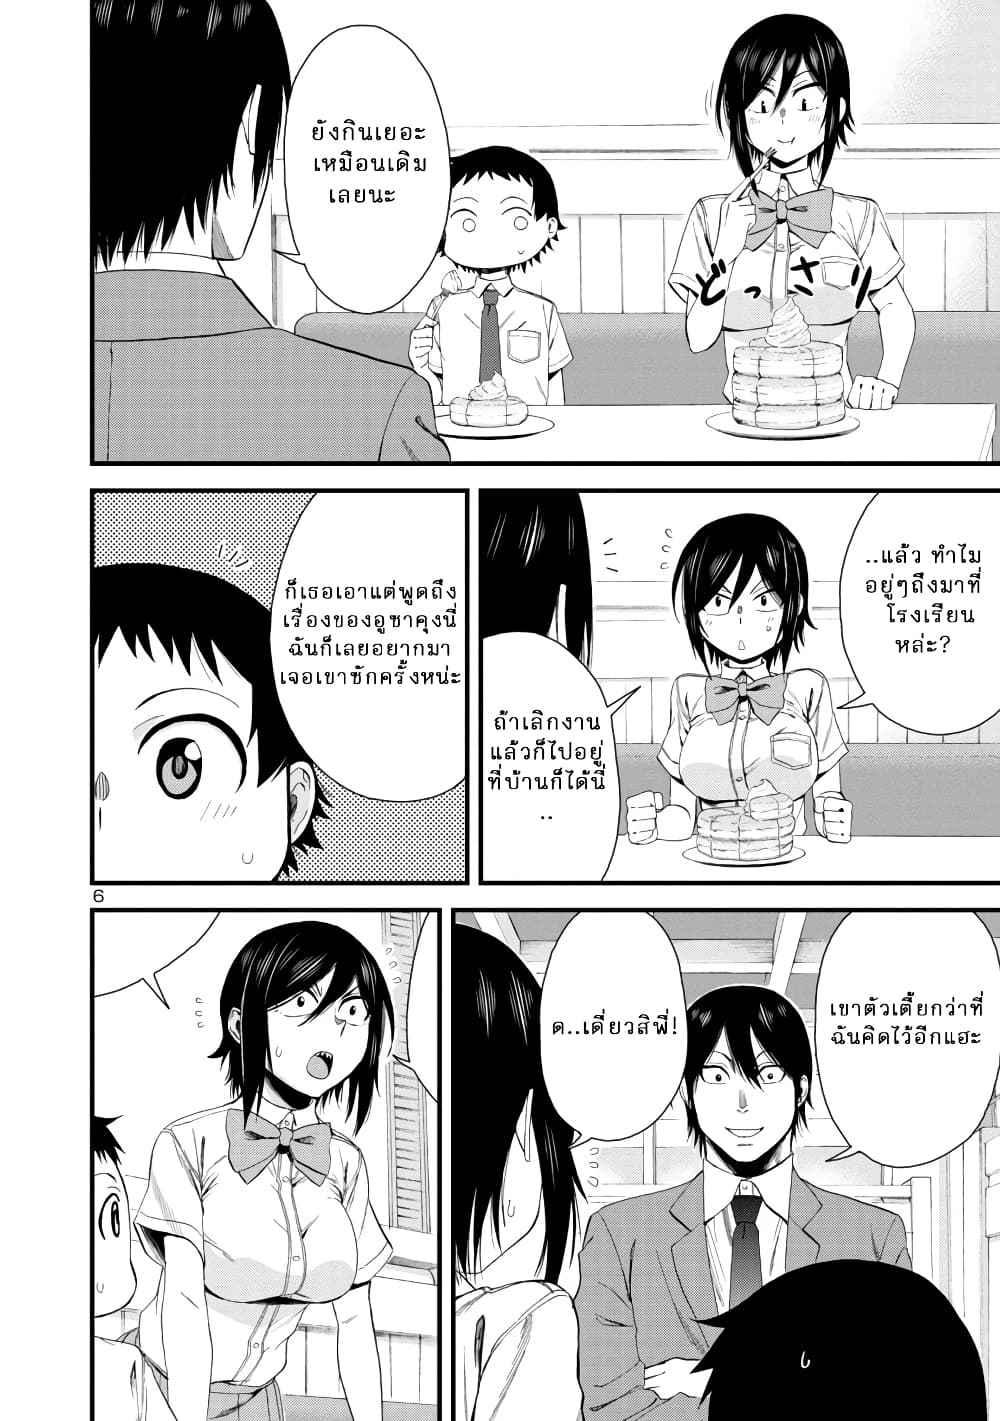 Hitomi-chan Is Shy With Strangers วันๆของน้องฮิโตมิก็เป็นแบบนี้แหล่ะ 22-22